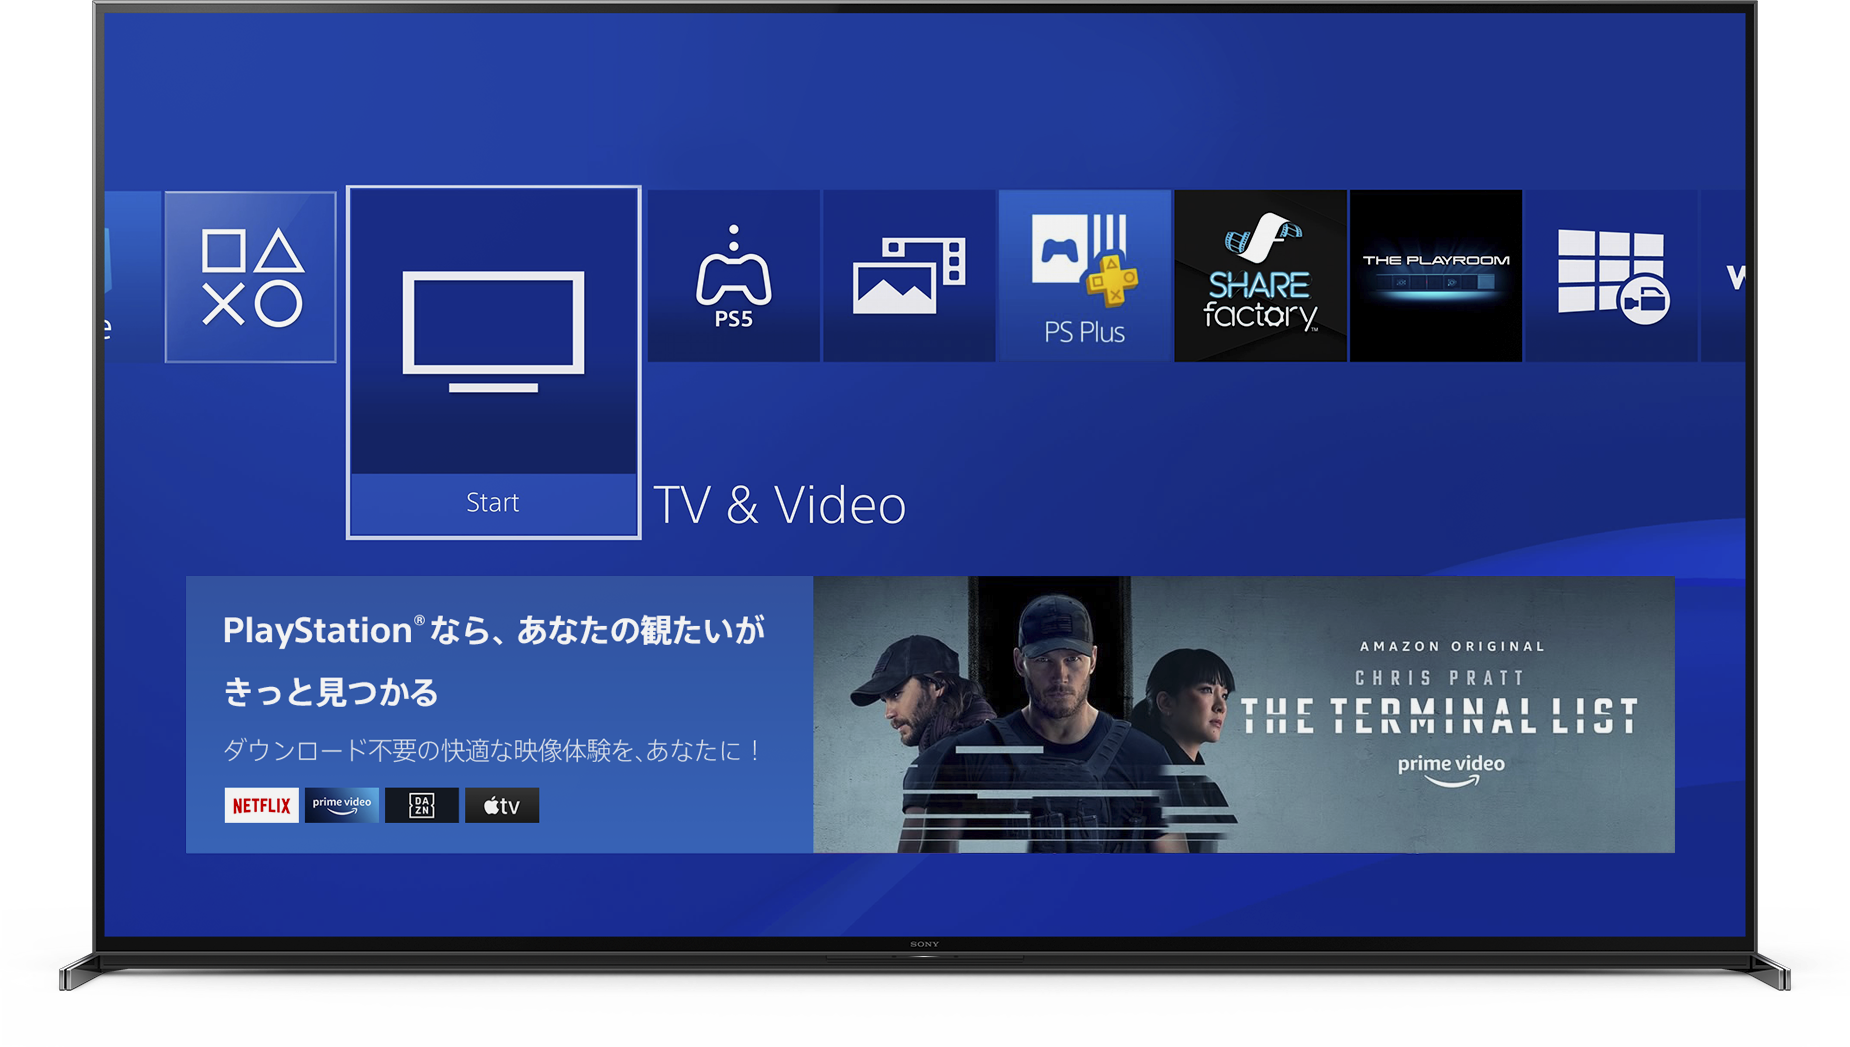 PS4のユーザーインターフェースを表示しているテレビ画面